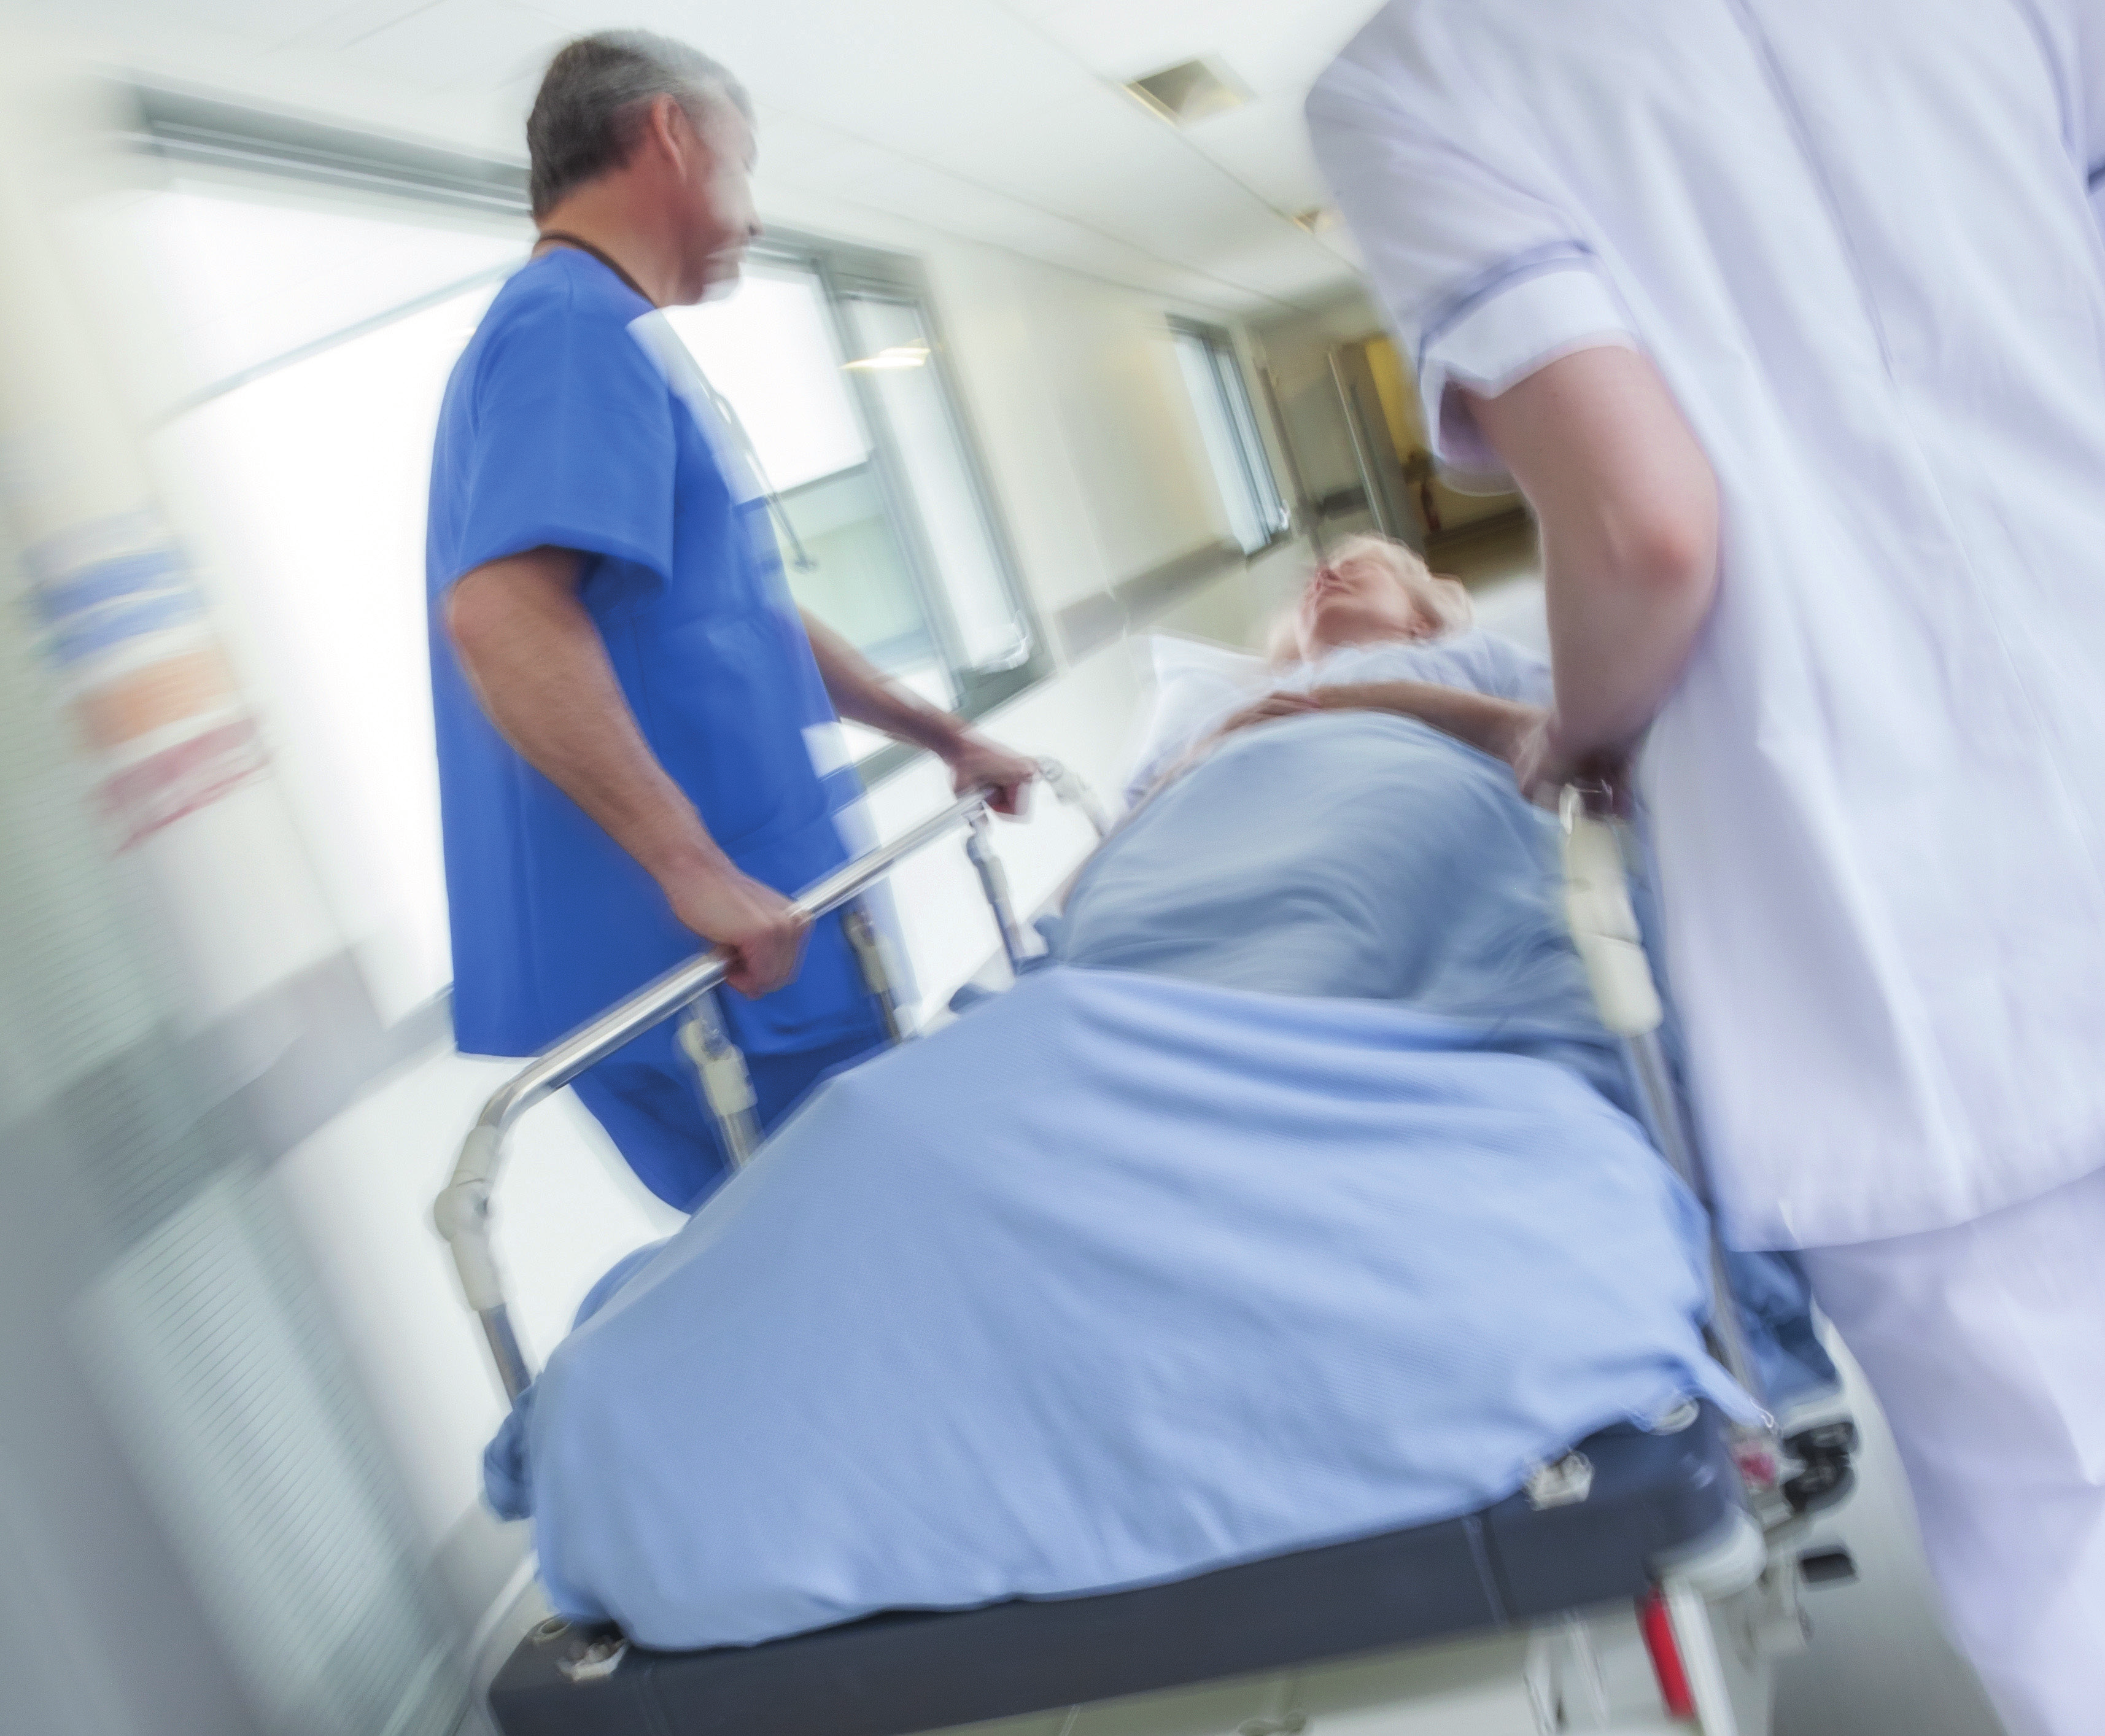 Sistemas de aislamiento para instalaciones hospitalarias - Protegiendo a pacientes y personal en áreas de cuidado crítico Los Estándares tales como NFPA 99 y CSA Z32 requieren de sistemas de